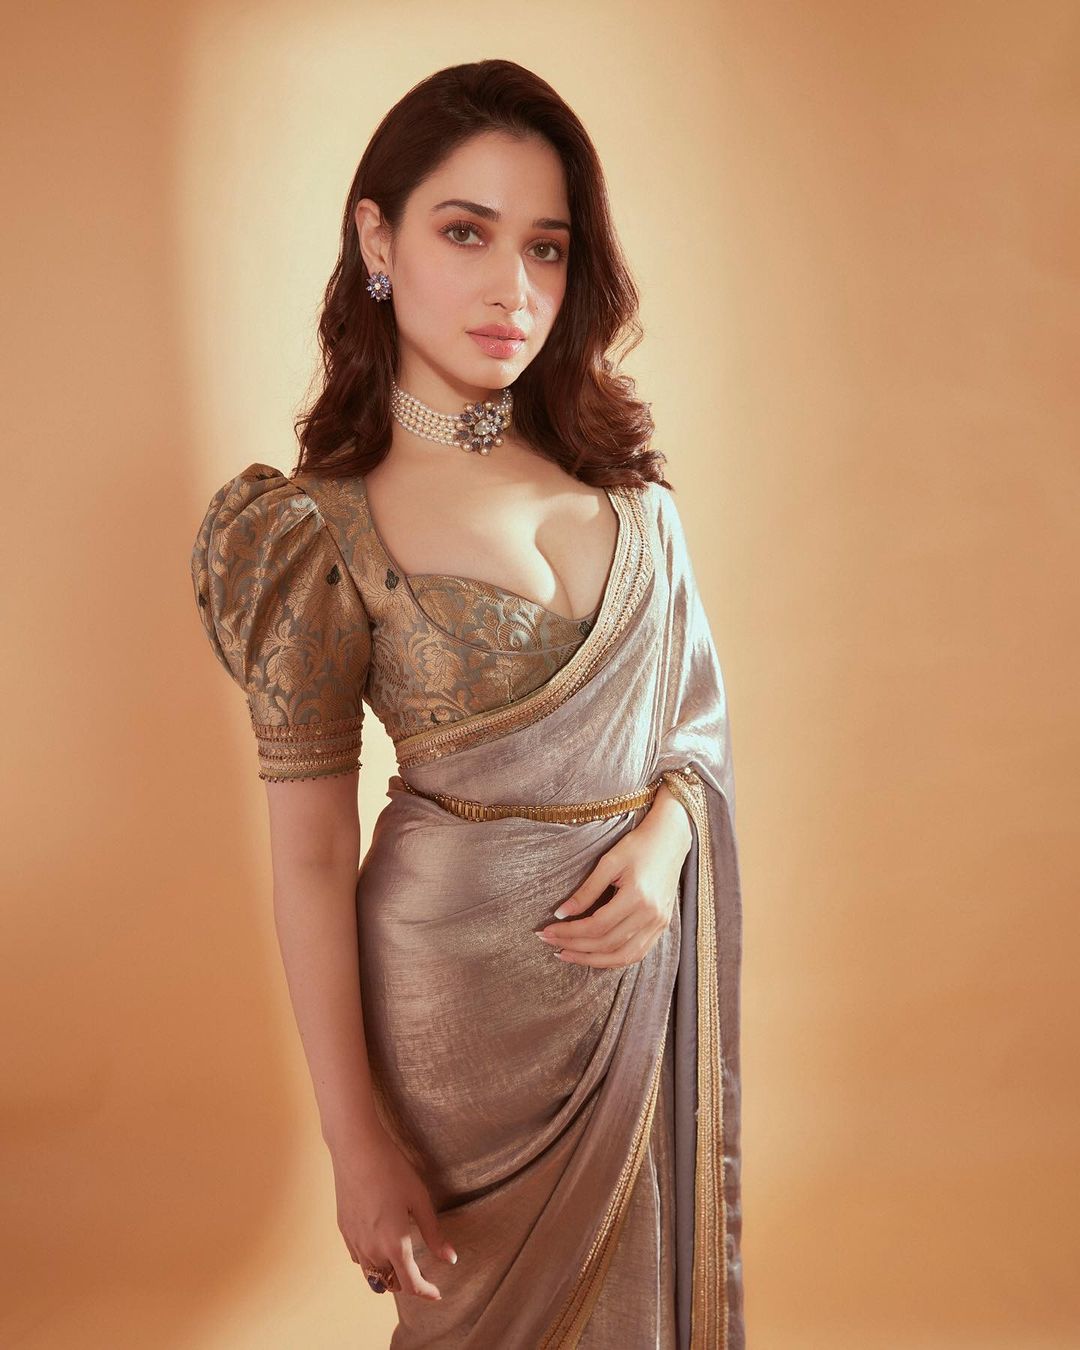 tamanna hot photos in golden saree look viral